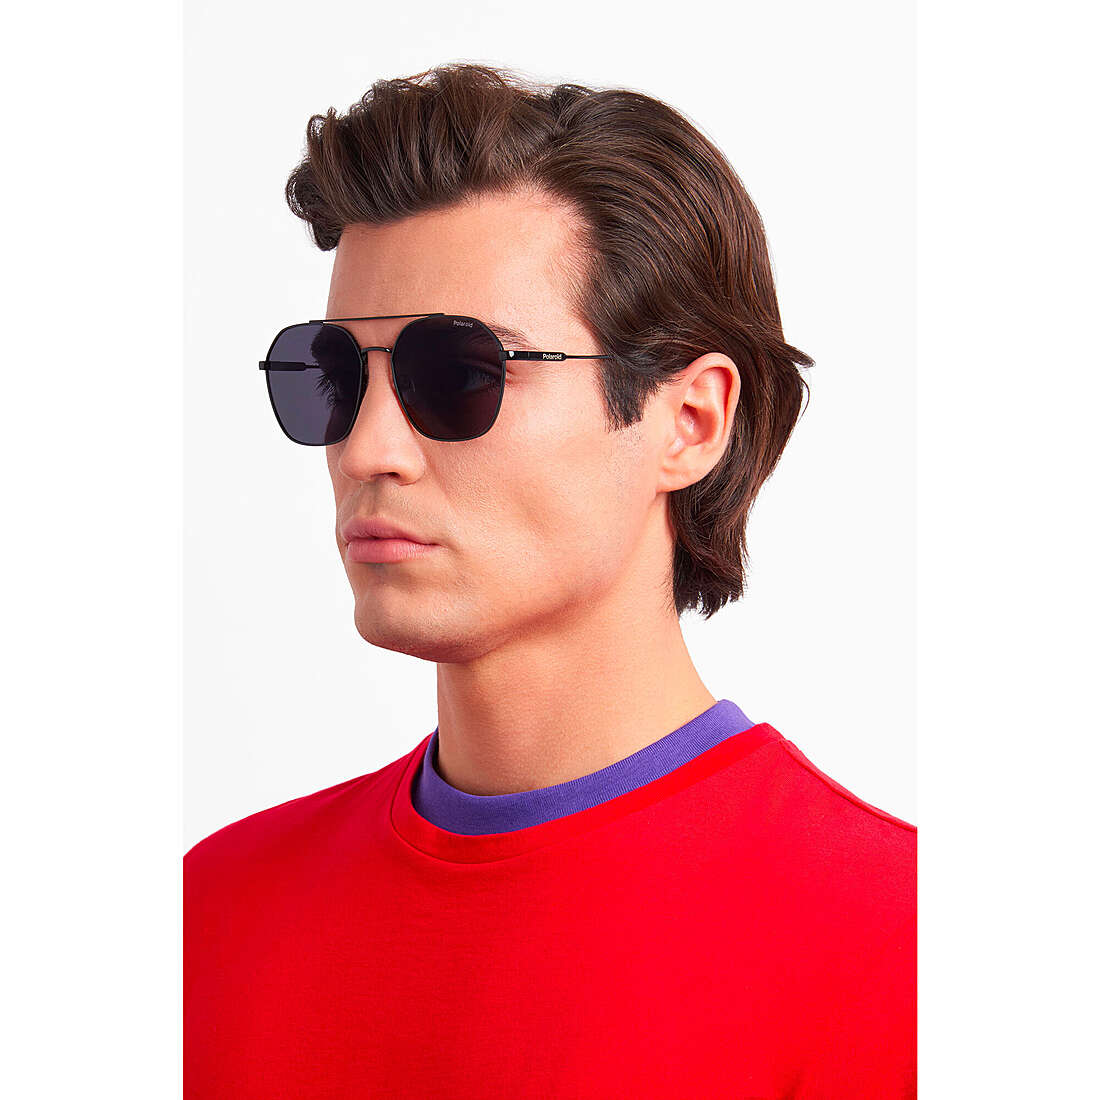 Polaroid occhiali da sole Cool unisex 20481180757M9 indosso